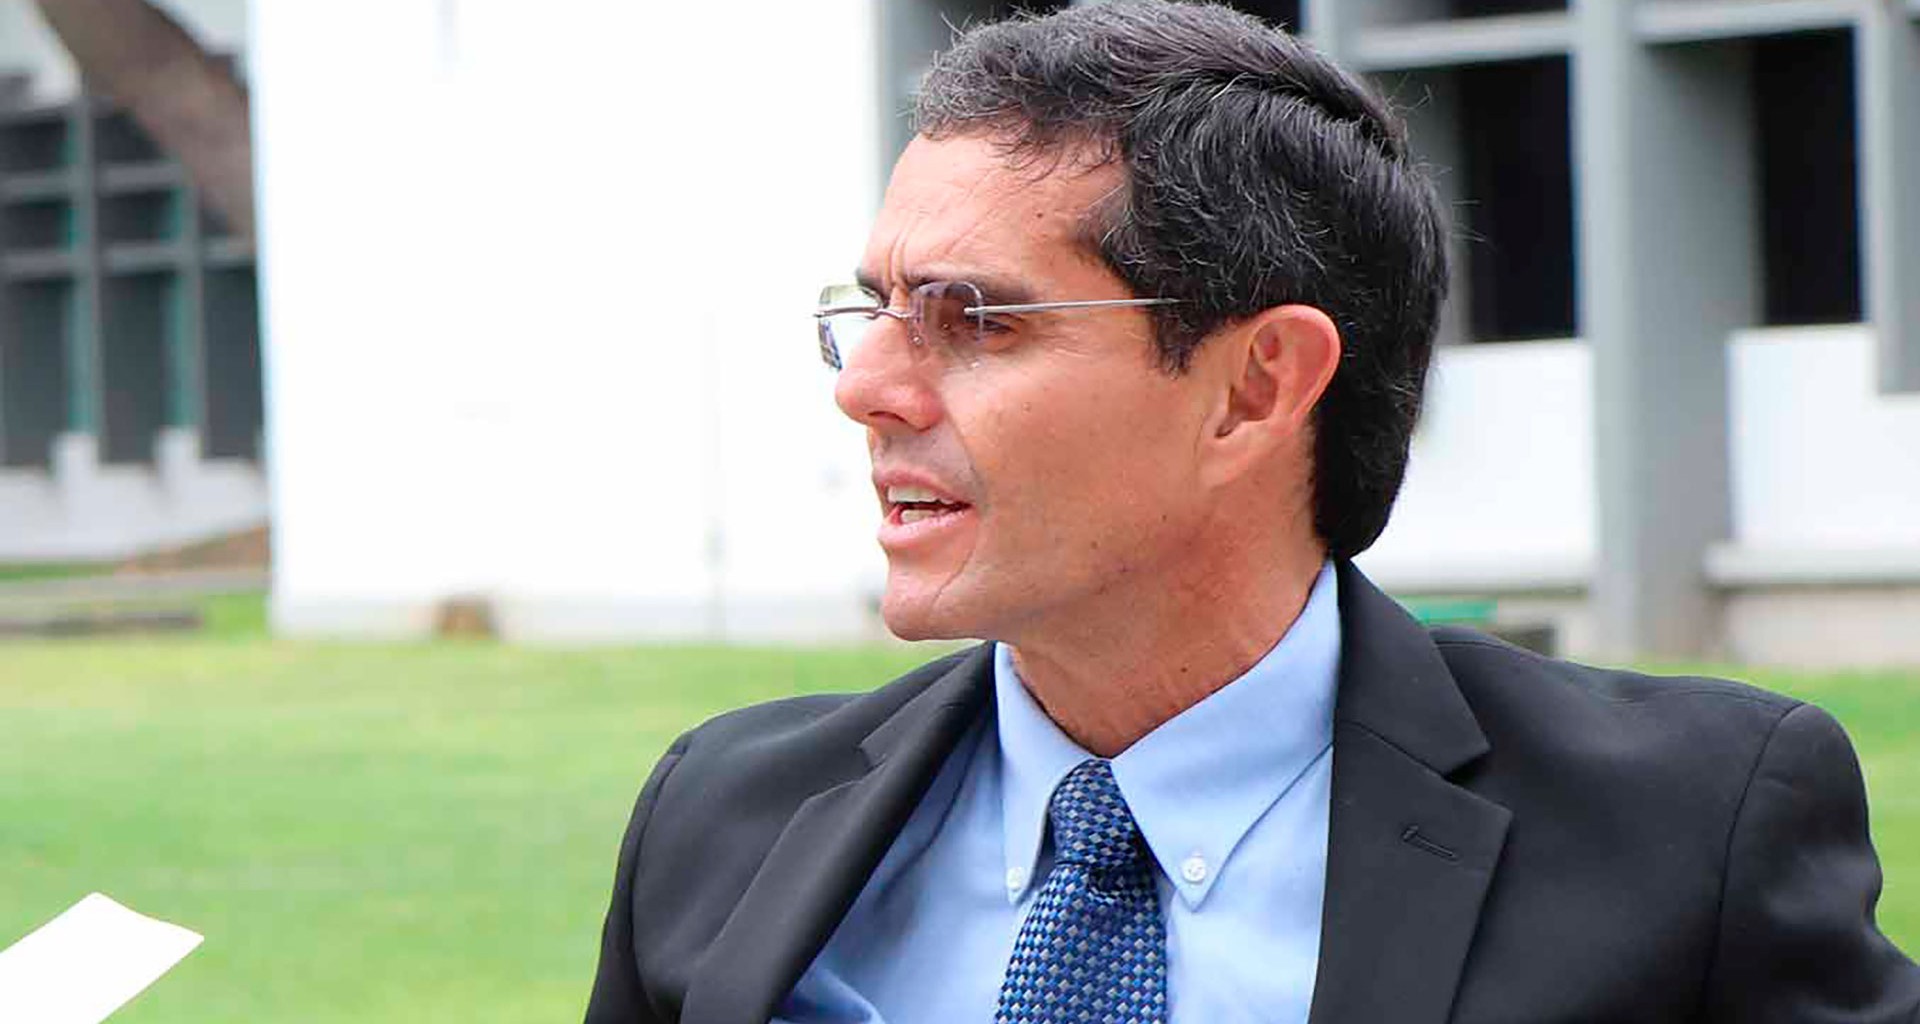 Líder empresarial con impacto en Colima y la región: Emilio Brun